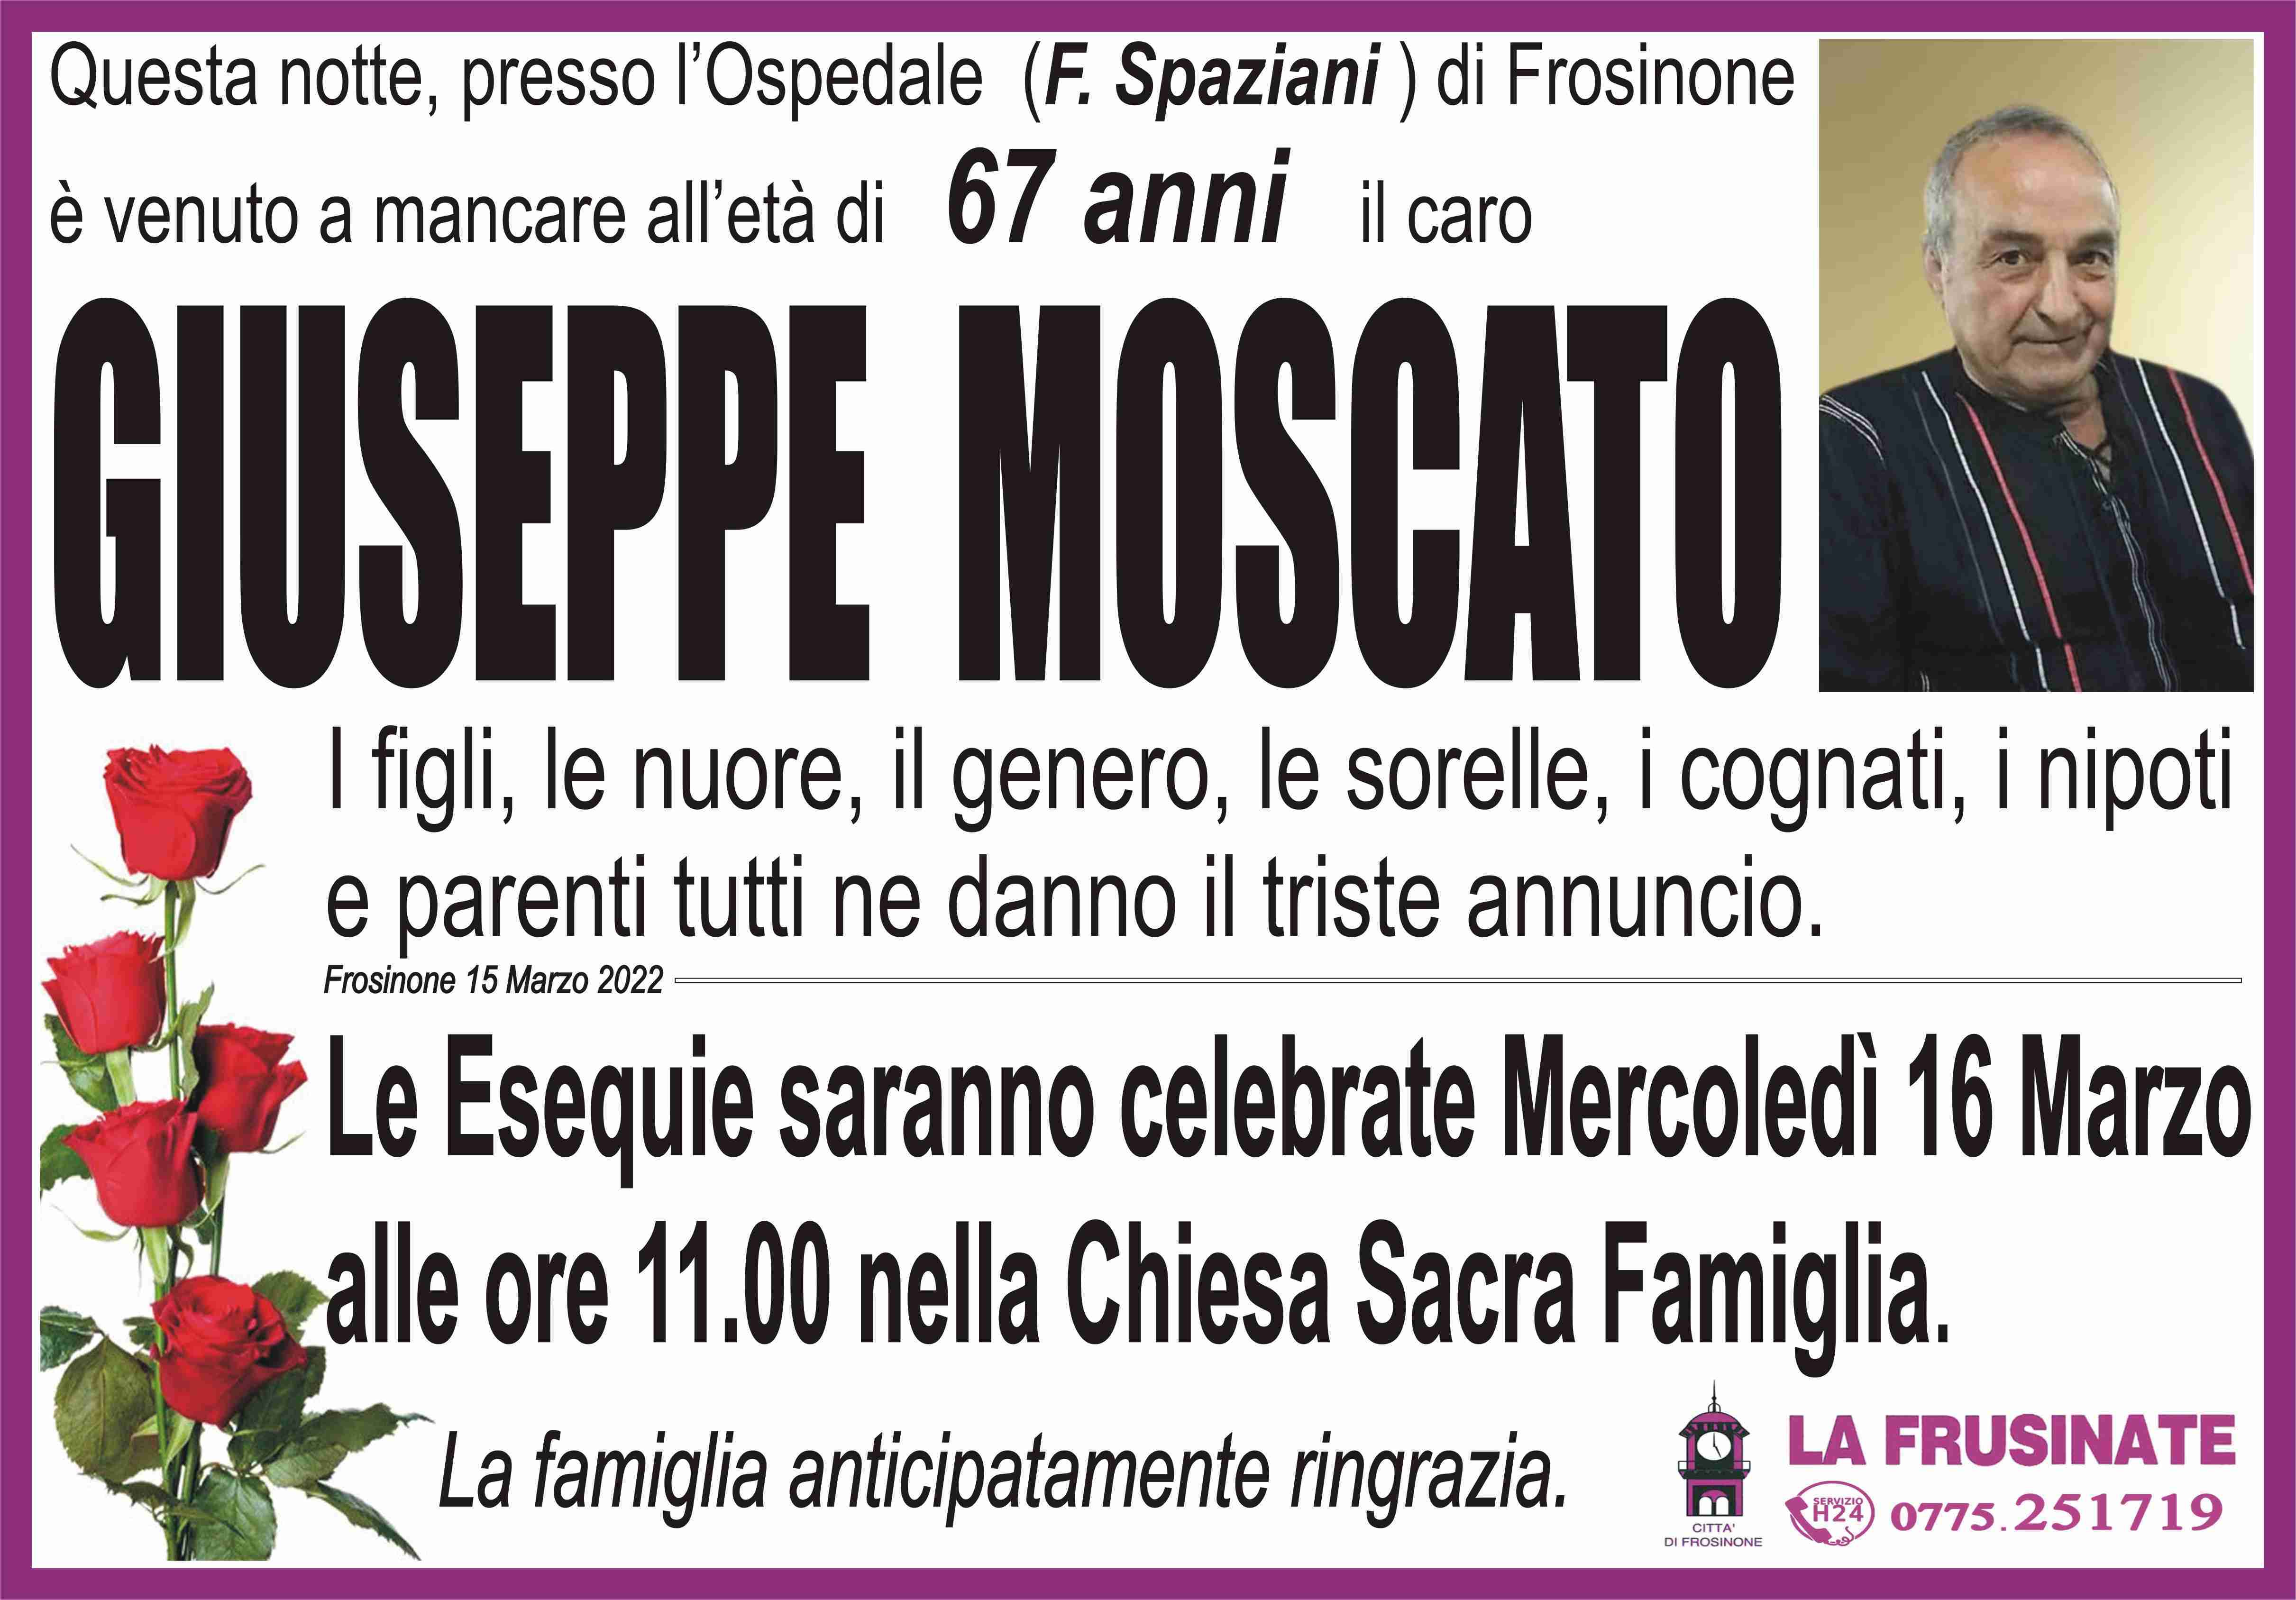 Giuseppe Moscato